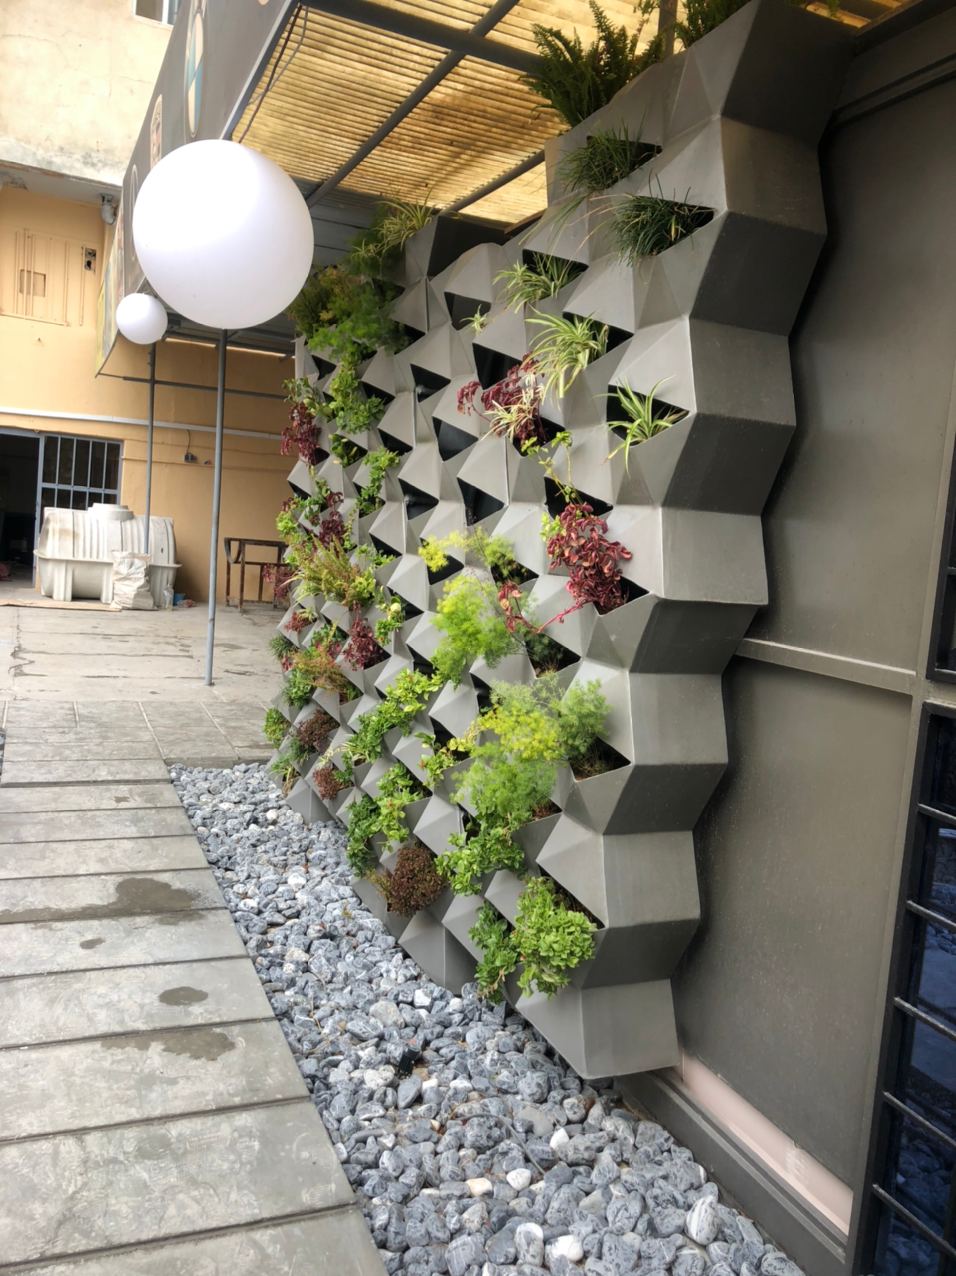 دیوار سبز هیدروپونیک درتهران /  طراحی و اجرای دیوارسبز / دیزاین لابی ساختمان